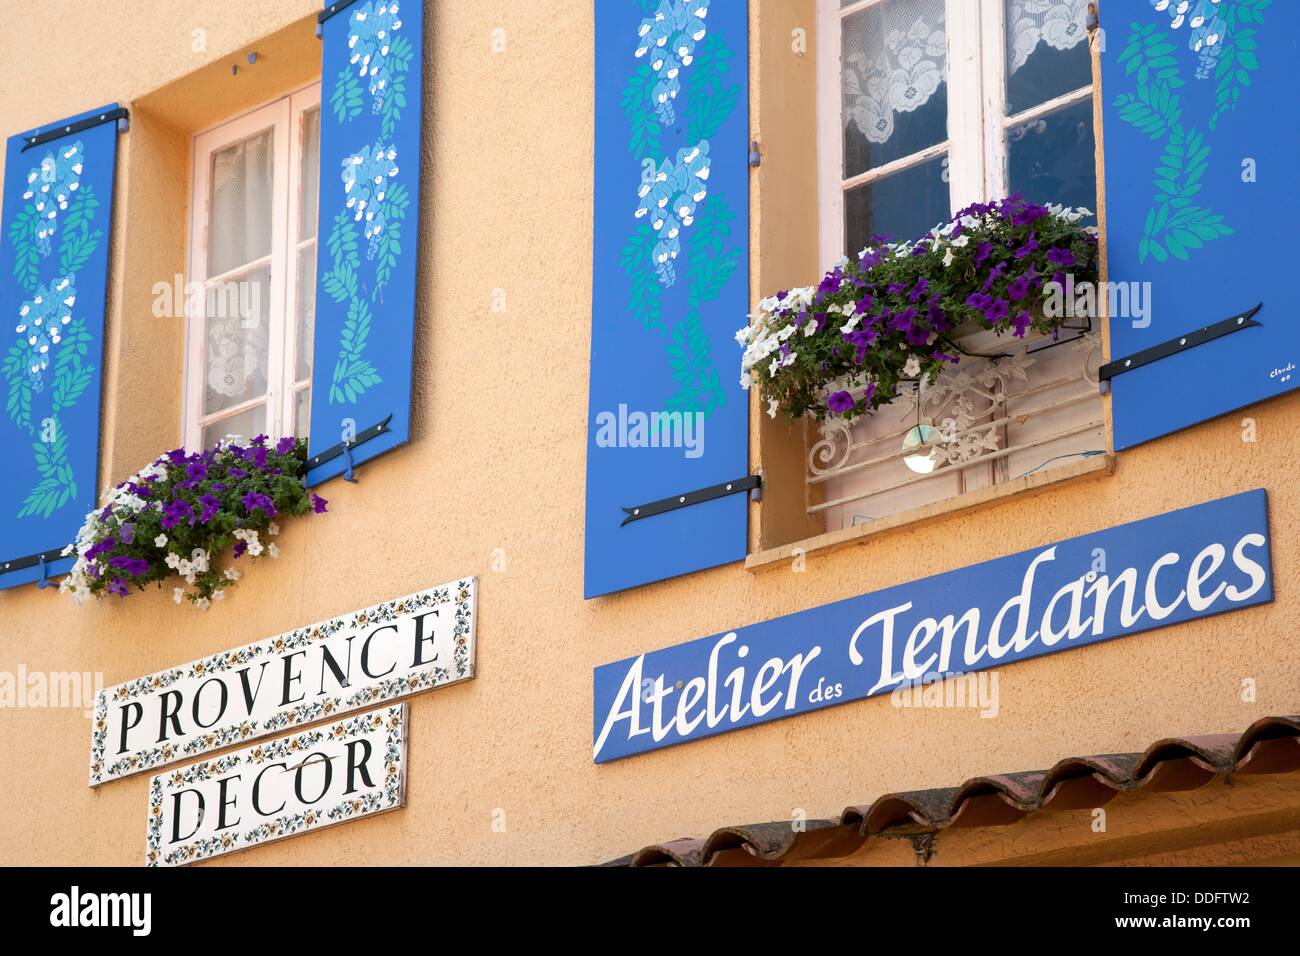 Bellamente decoradas y persianas azules y escaparate, Fayence, Provenza, Francia Foto de stock